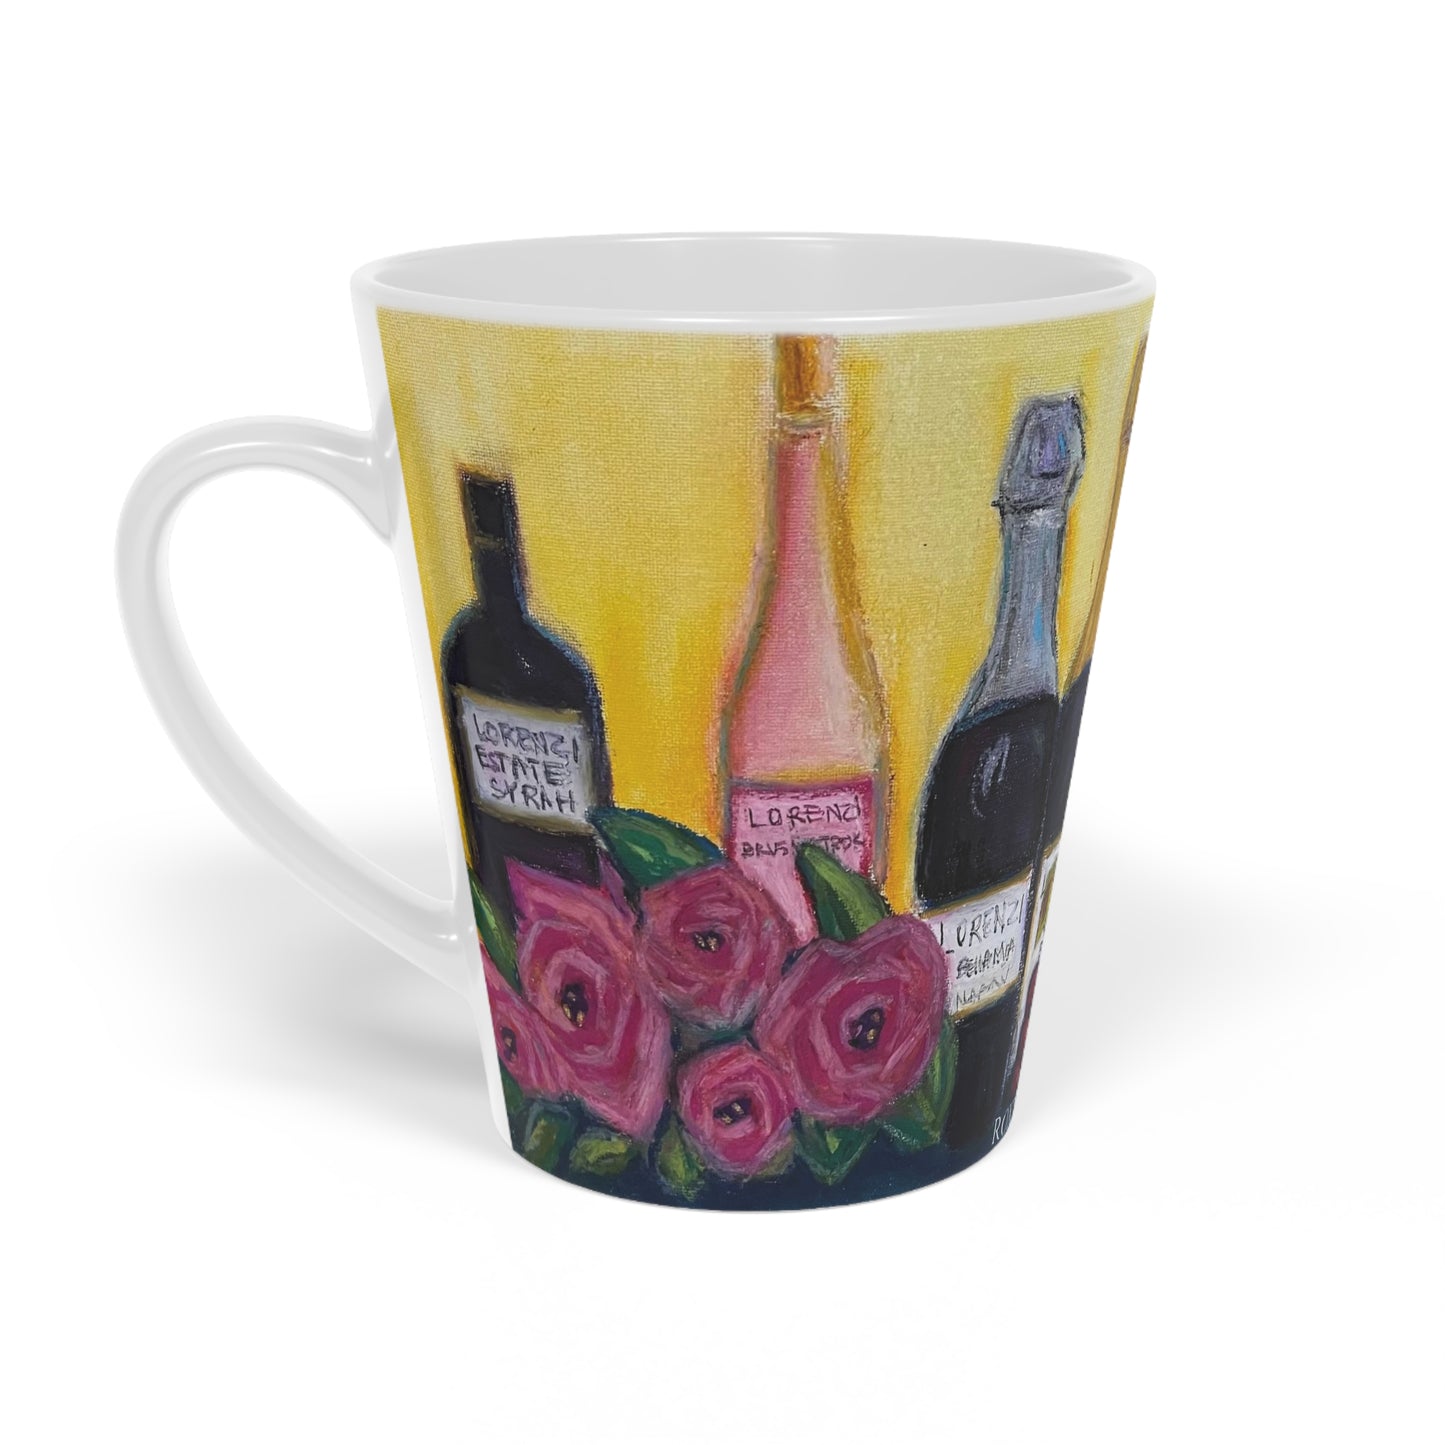 Lorenzi Estate Vin et Roses Latte Mug, 12oz